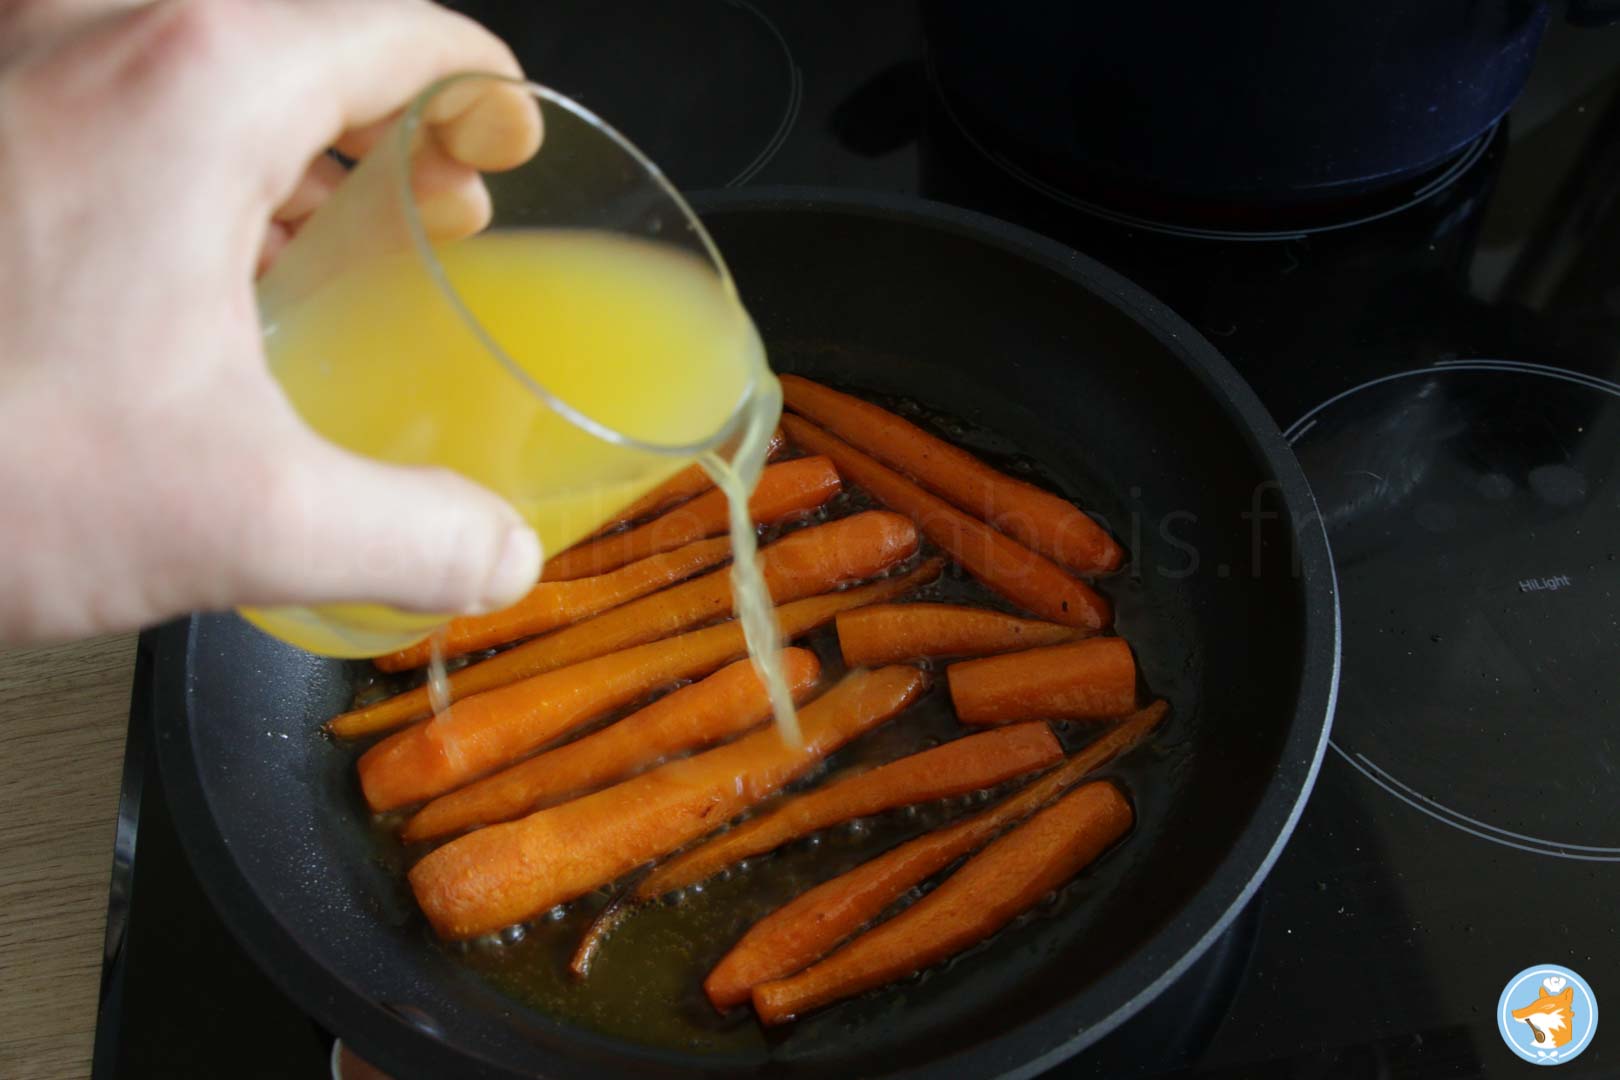 Déglacez les carottes avec le jus d'orange et laissez les carottes confire dans ce jus, le résultat est délicieux ! 